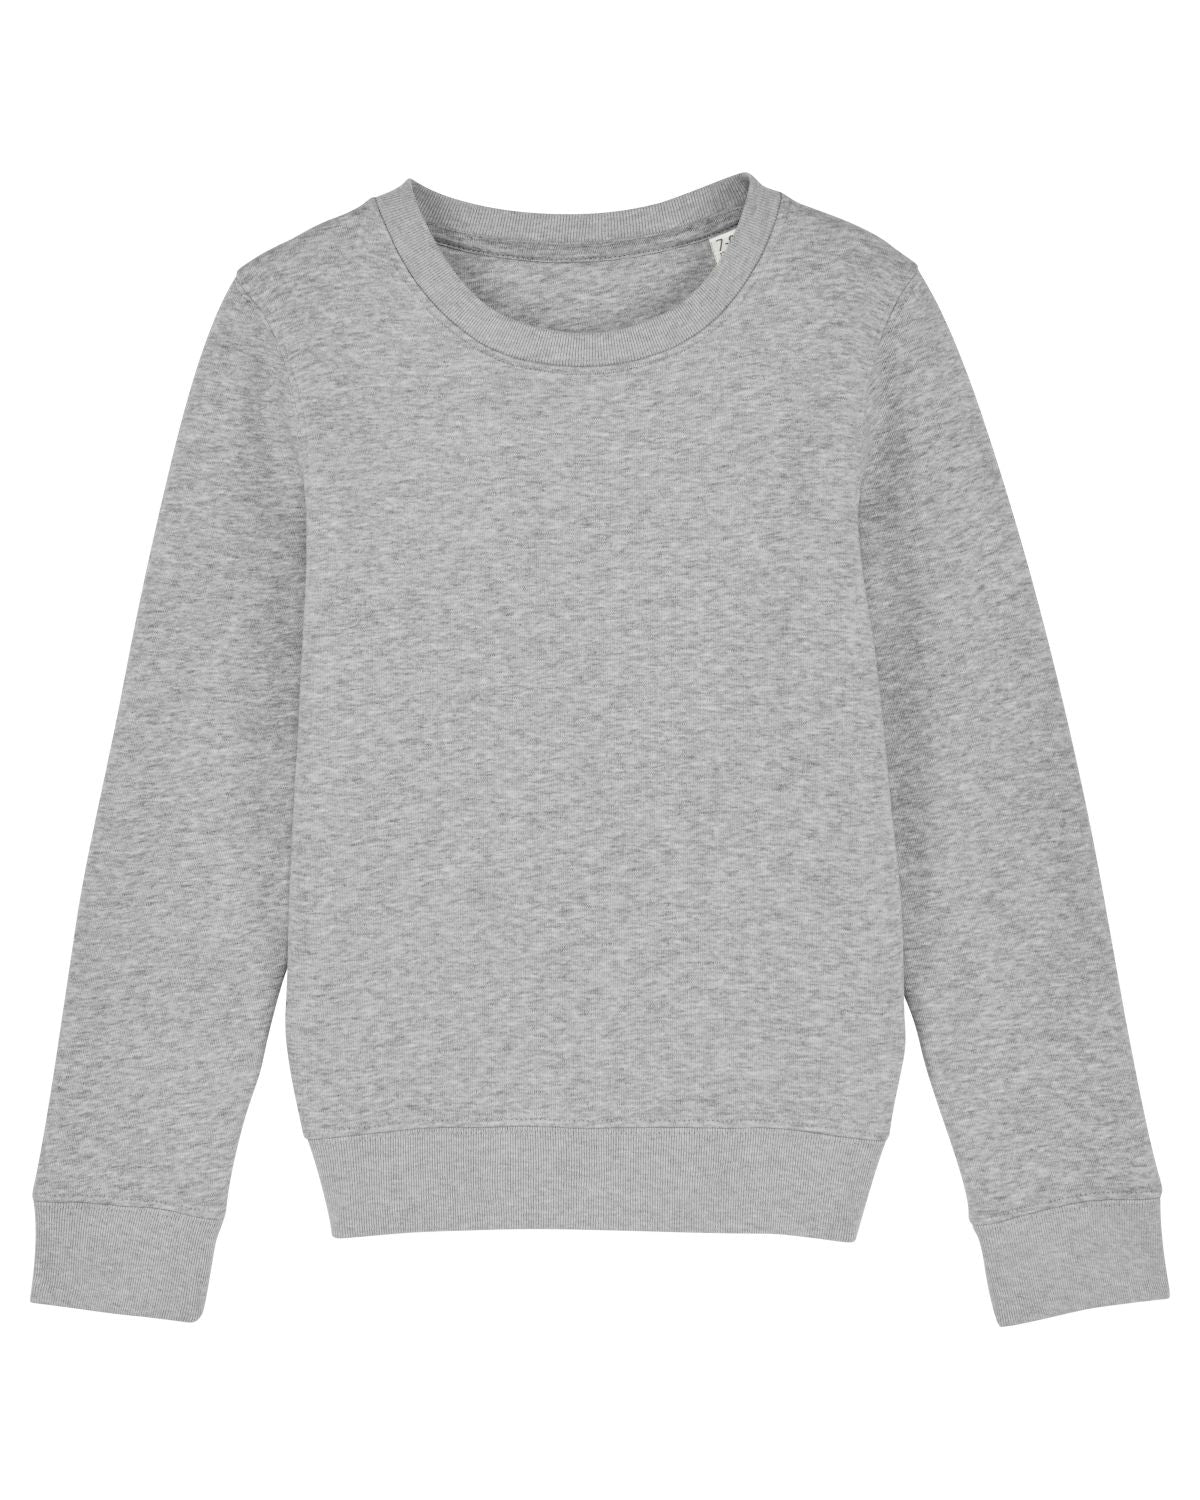 Stanley/Stella's - Mini Changer Sweater - Heather Grey